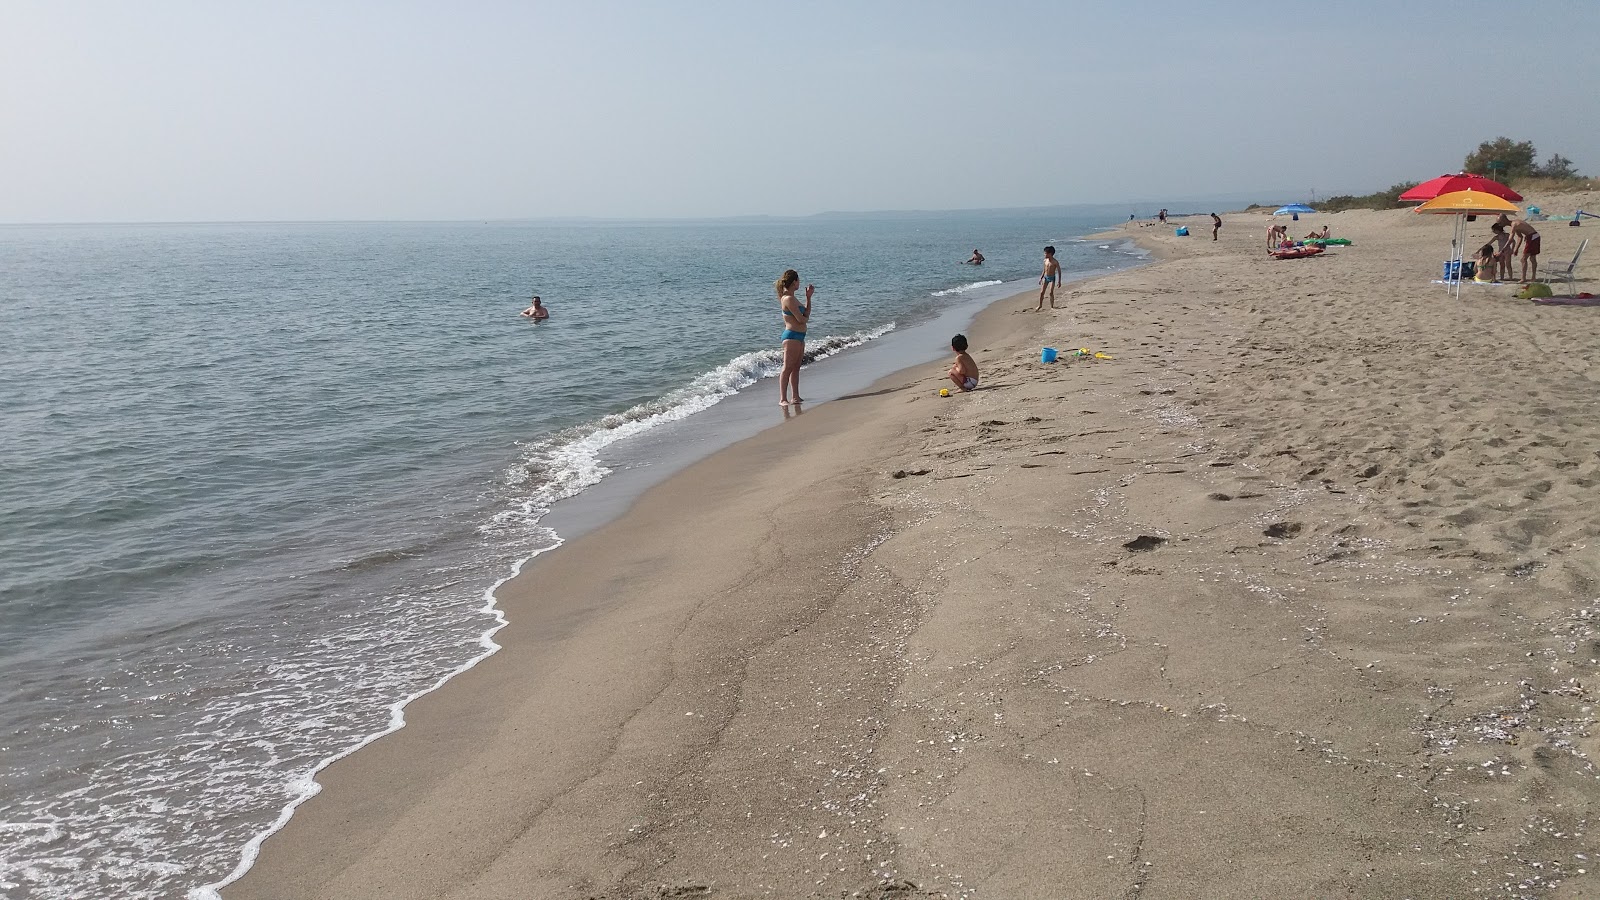 Fotografie cu Primosole beach II cu o suprafață de nisip maro